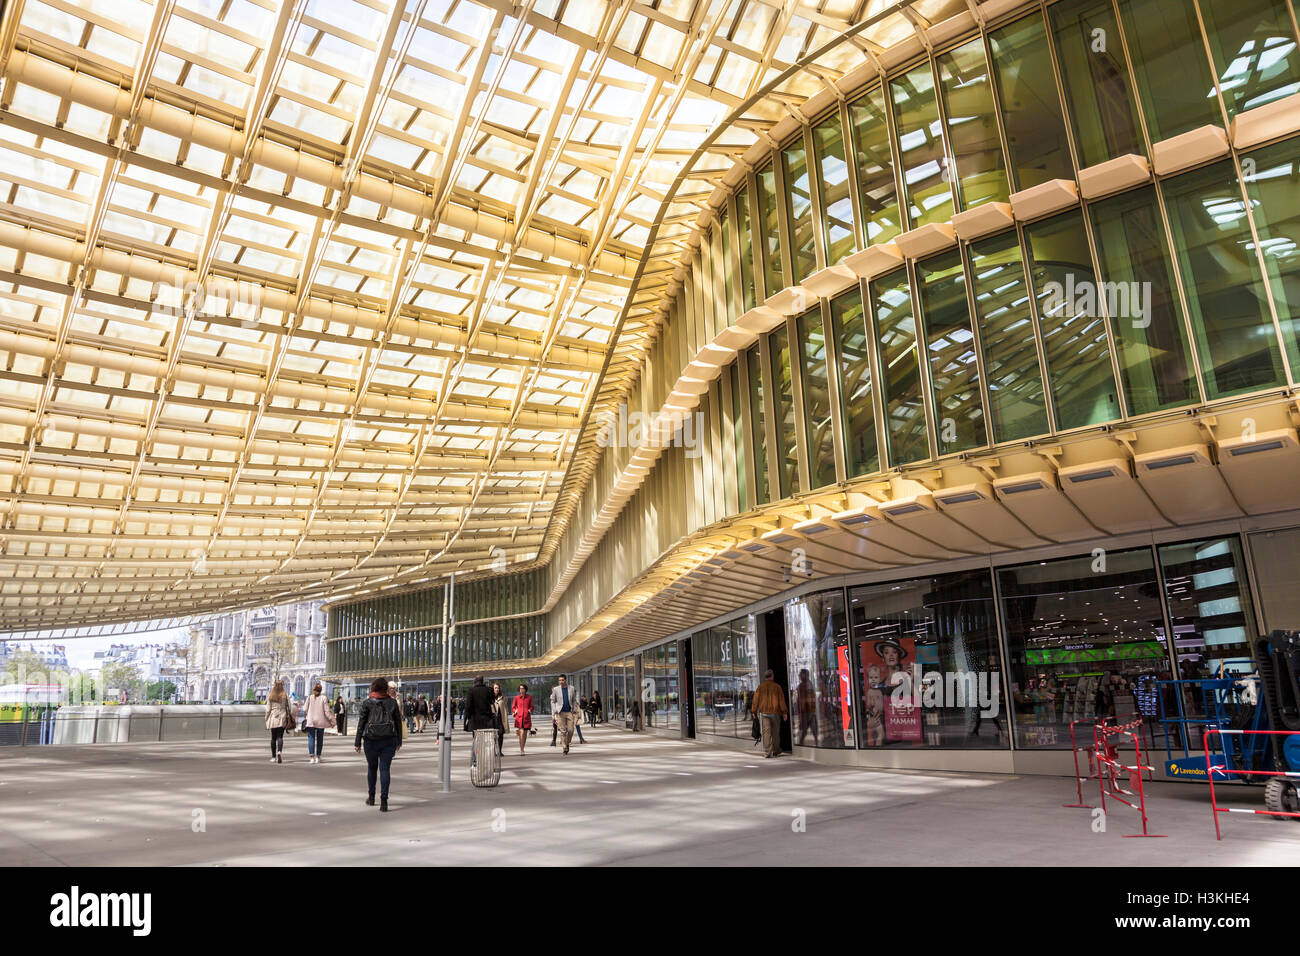 Forum des Halles shopping centre, Paris, France Stock Photo